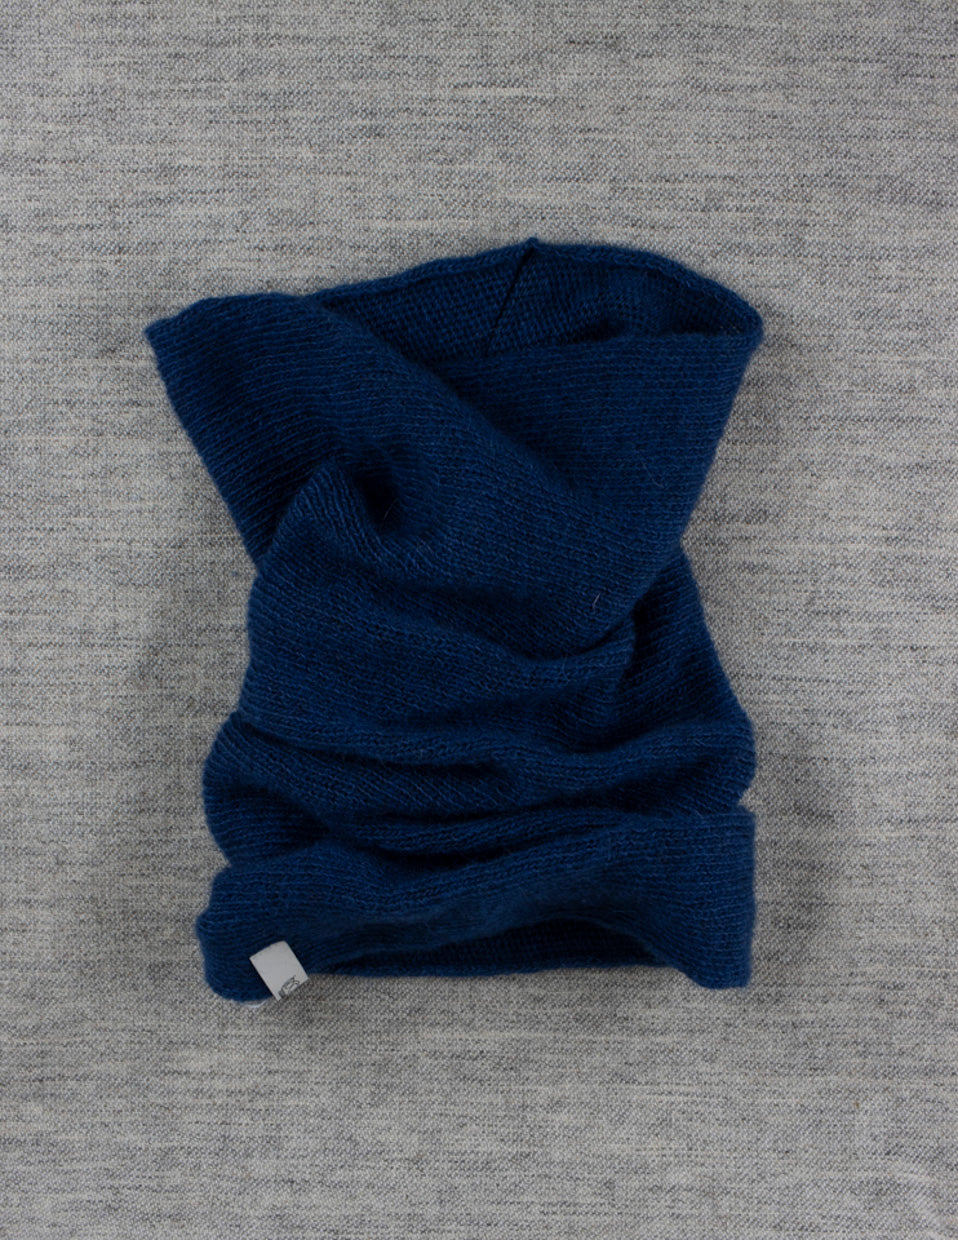 Machine-knit neck warmer